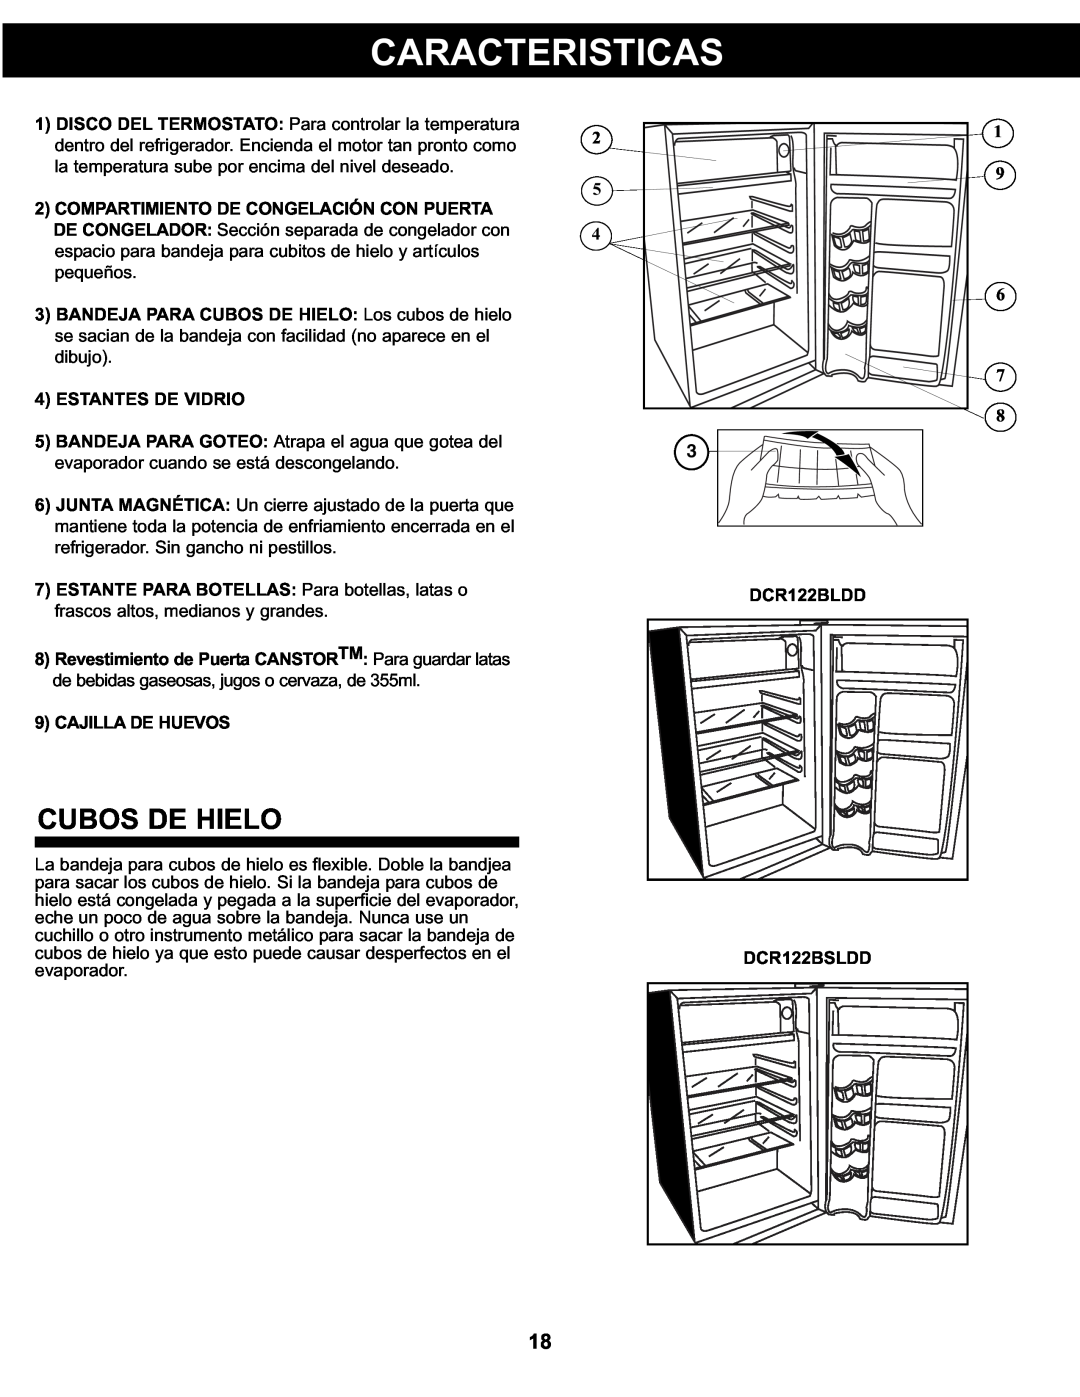 Danby DCR122BLDD manual Caracteristicas, Cubos De Hielo, 4ESTANTES DE VIDRIO, 9CAJILLA DE HUEVOS, DCR122BSLDD 